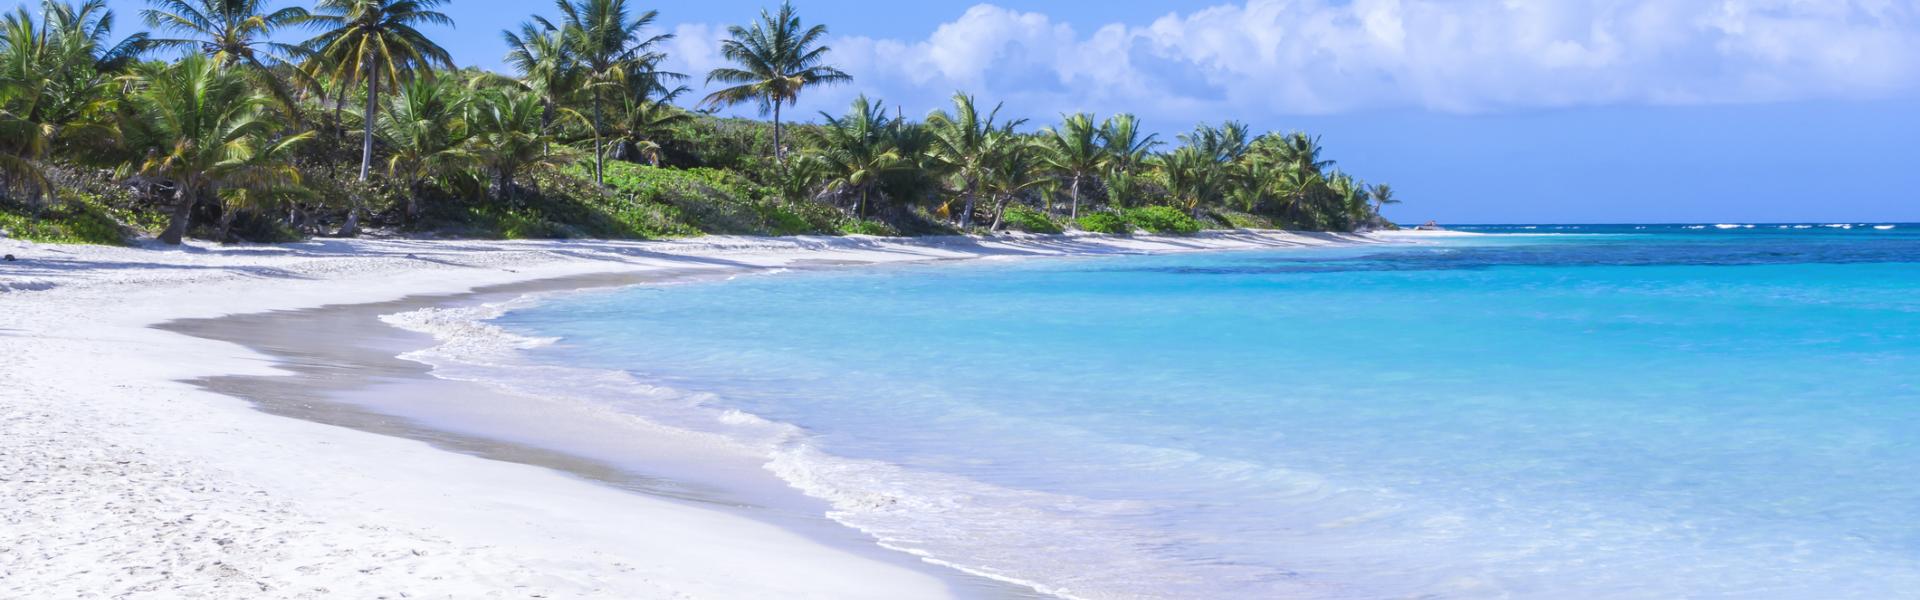 Culebra Vacation Rentals - Wimdu